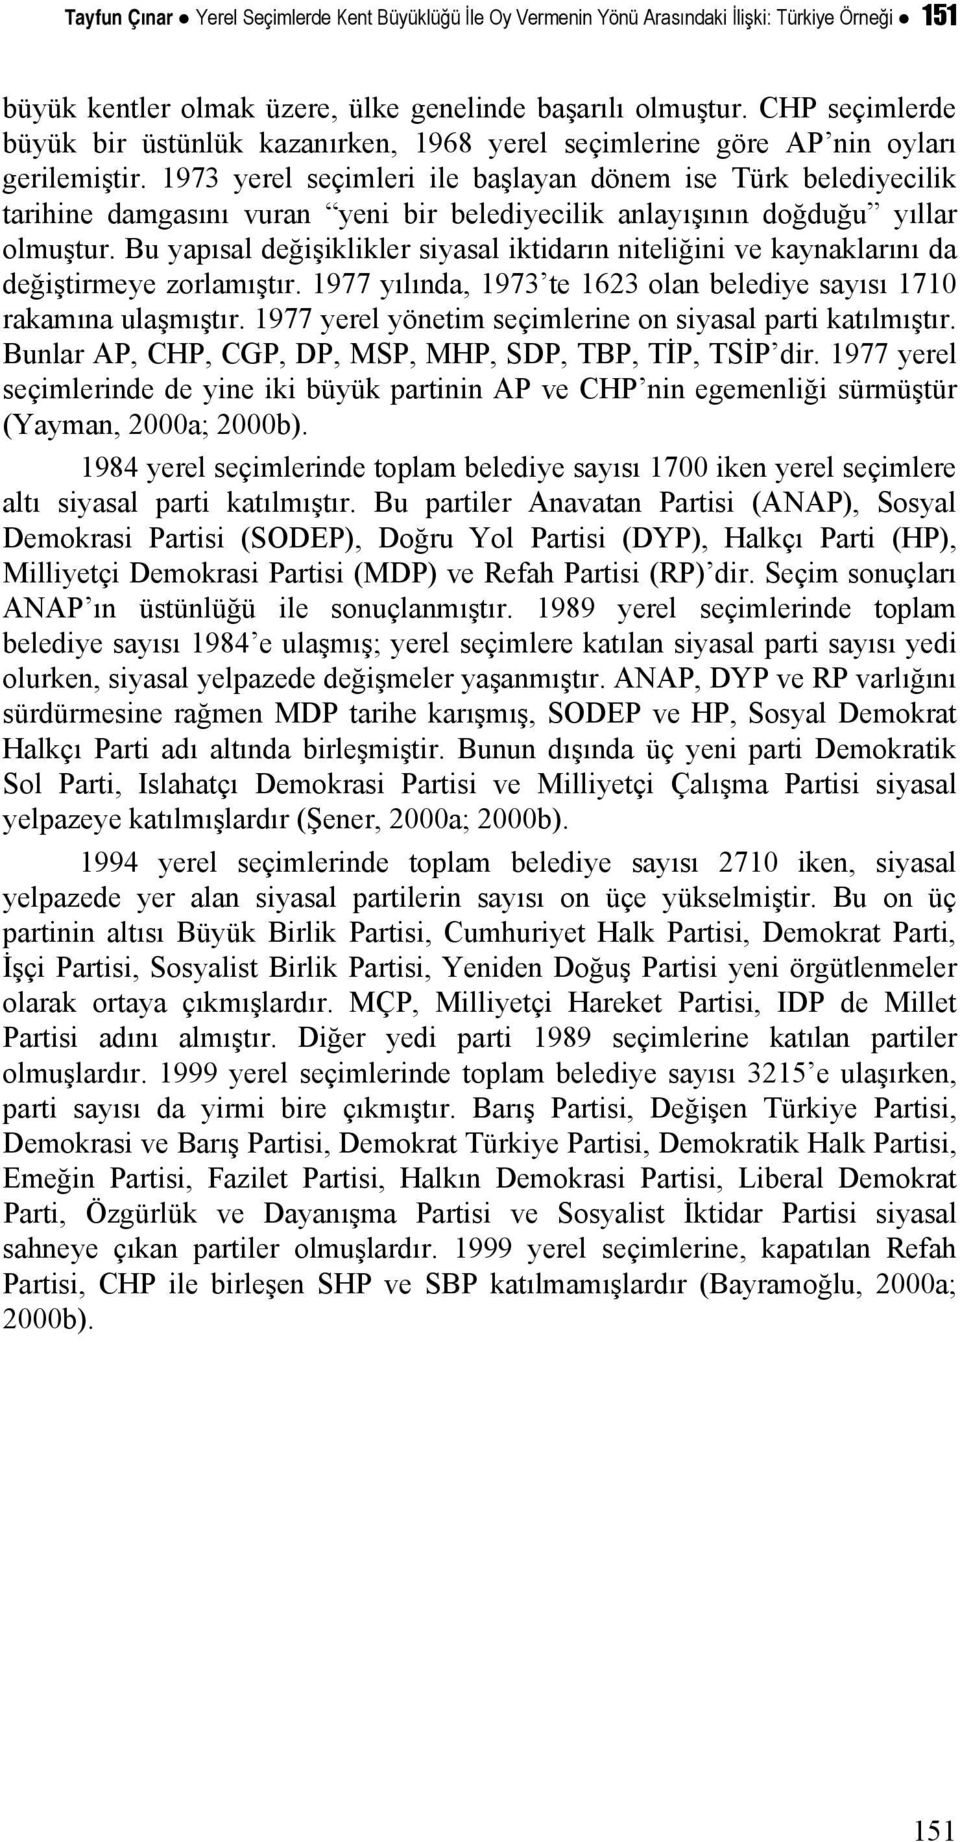 1973 yerel seçimleri ile başlayan dönem ise Türk belediyecilik tarihine damgasını vuran yeni bir belediyecilik anlayışının doğduğu yıllar olmuştur.